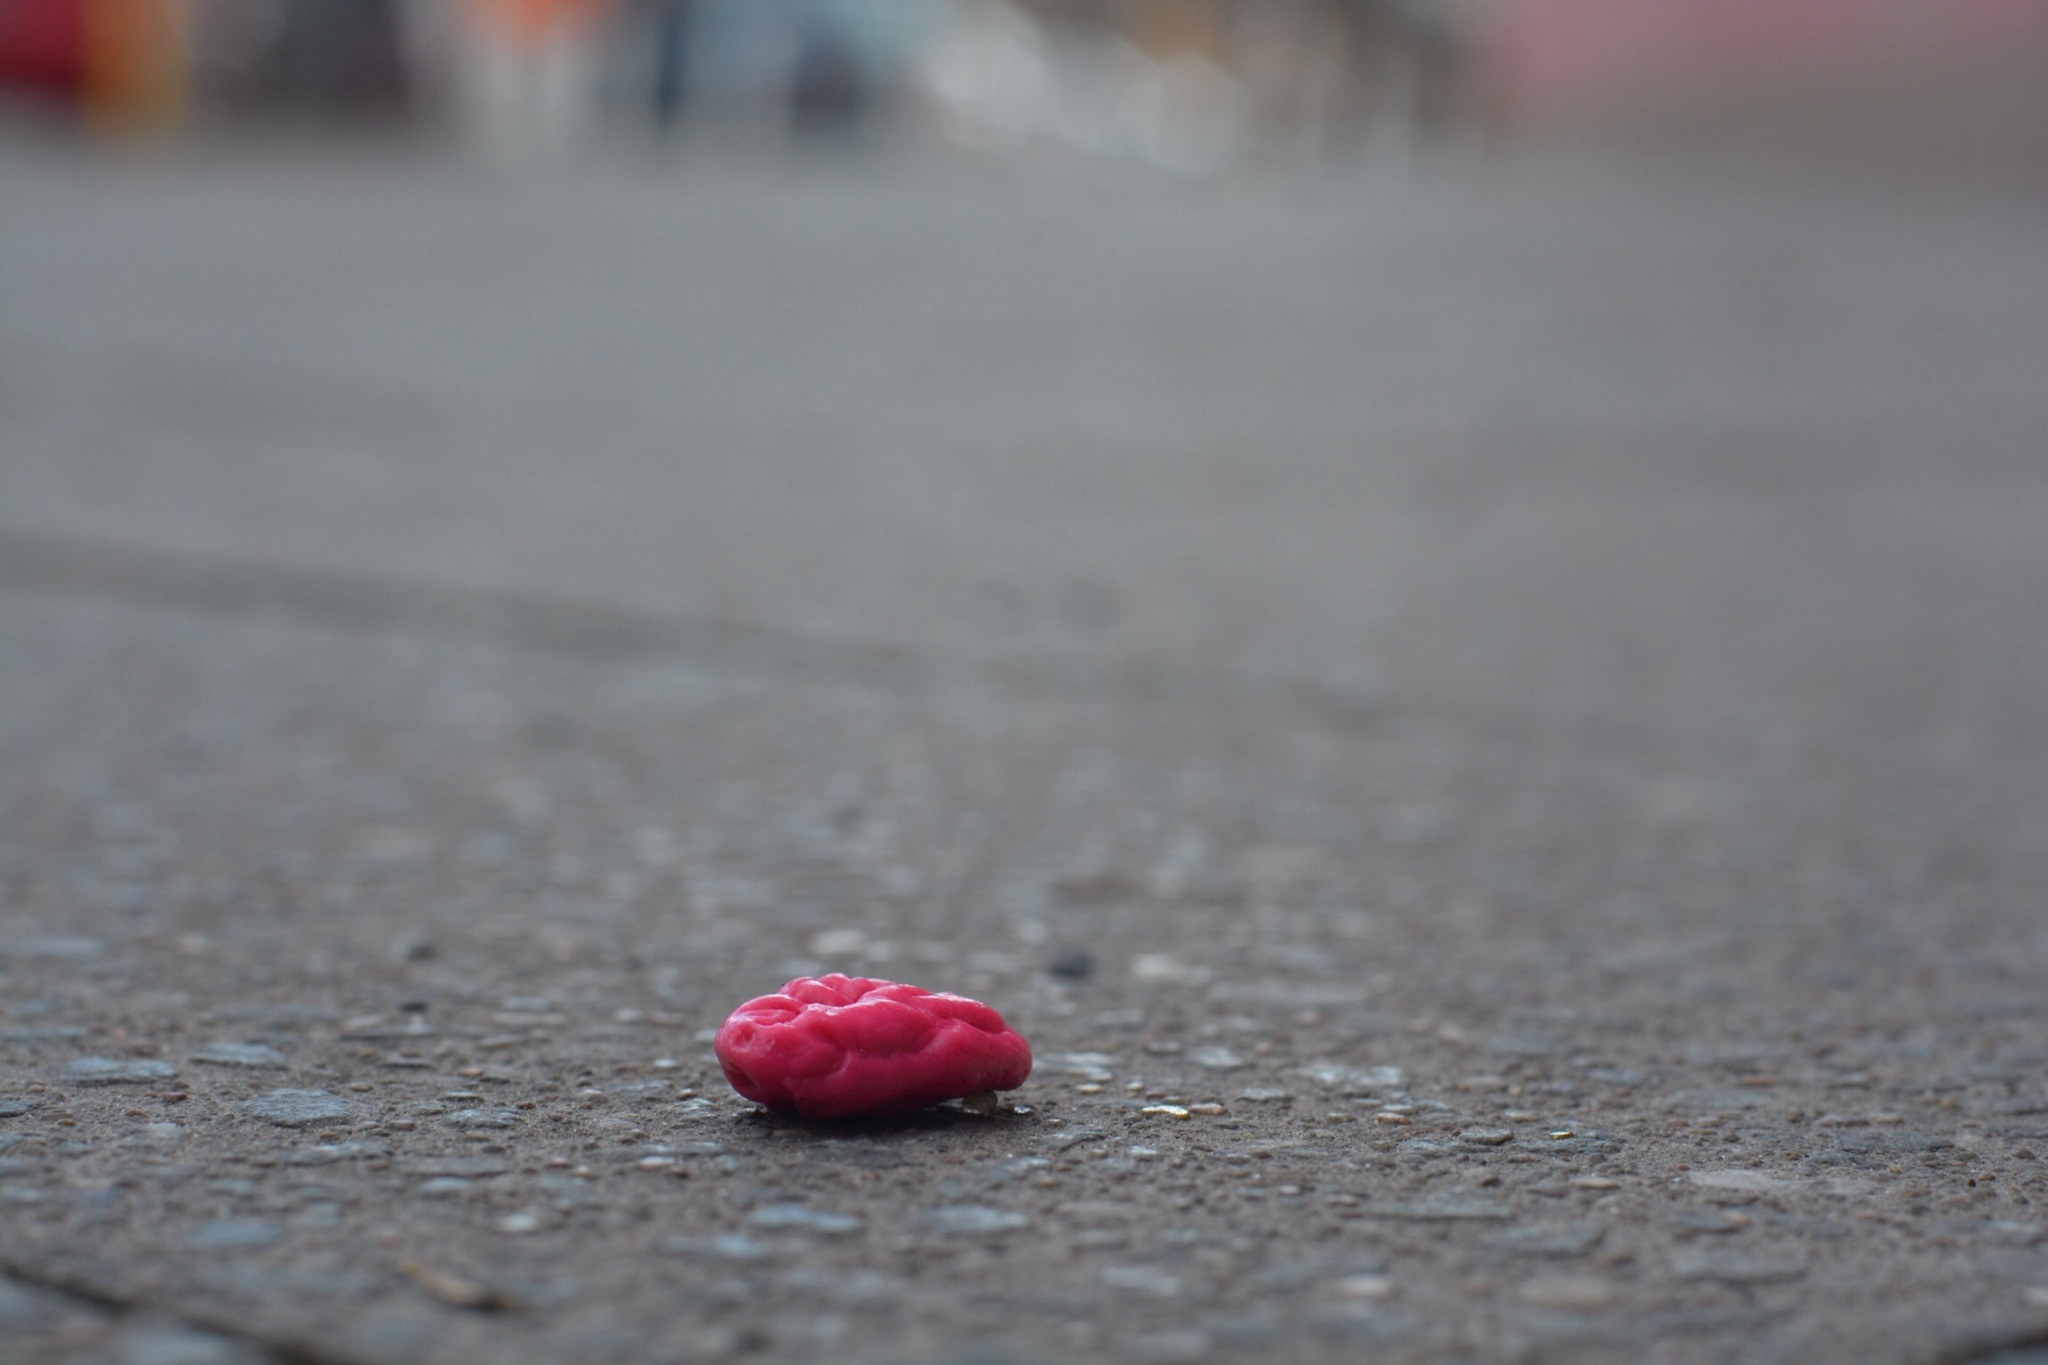 Bubble gum on pavement.